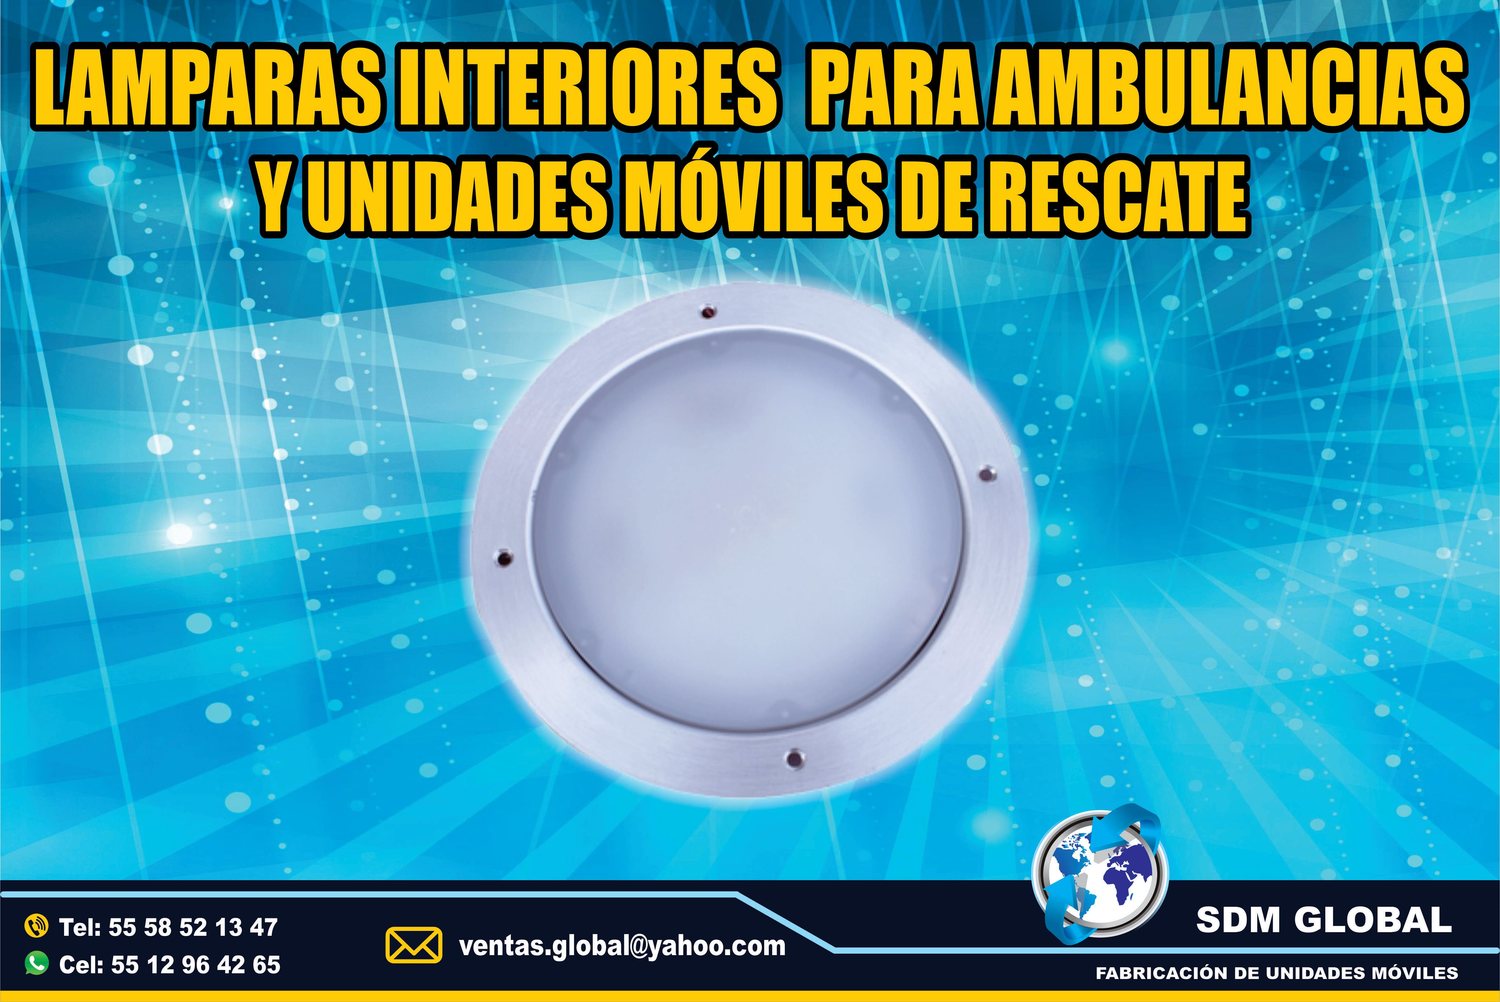 <span style="font-weight: bold;">Venta de Luces Perimetrales para Ambulancias de Traslado </span><br>